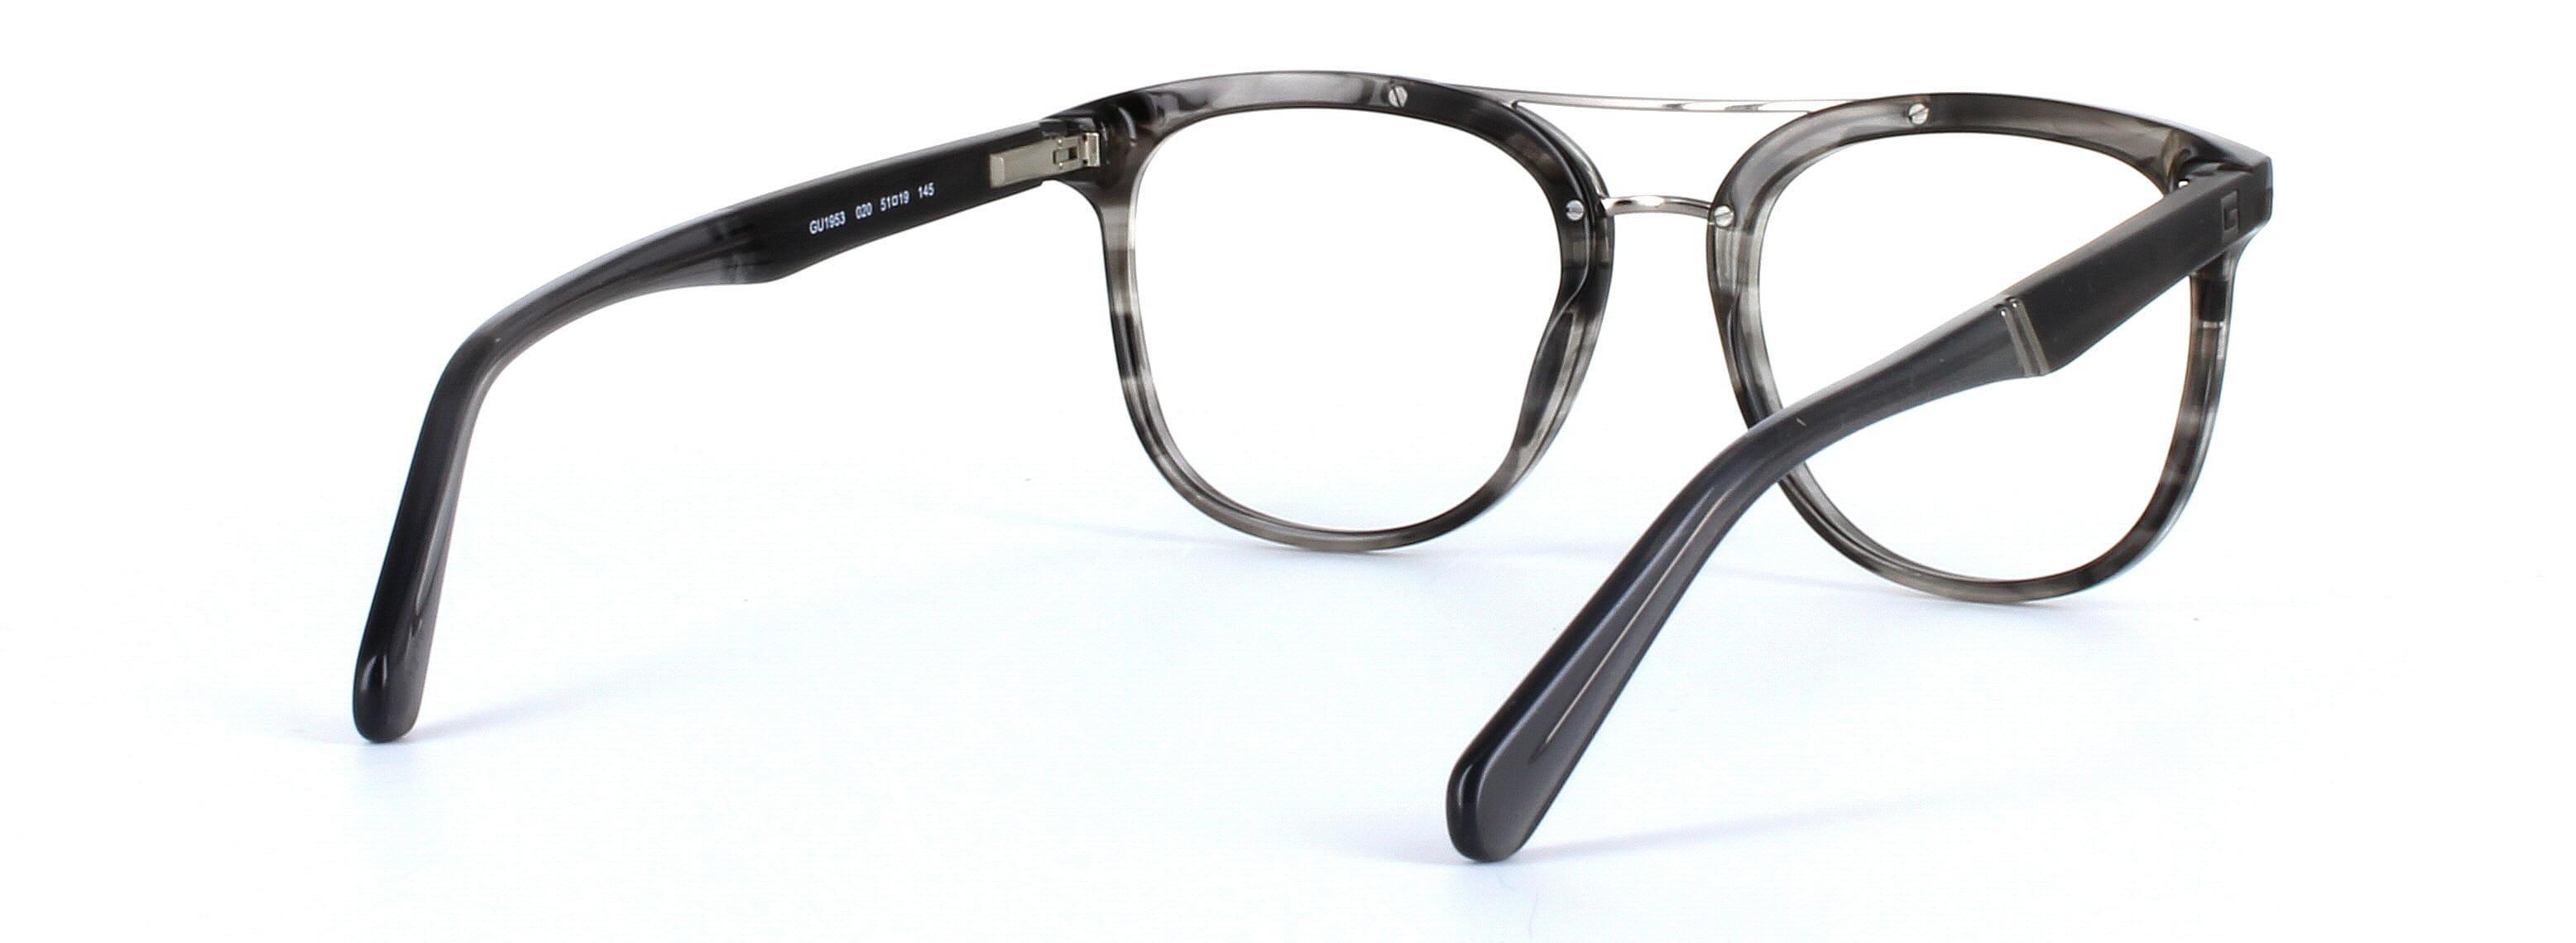 GUESS (GU1953-020) Grey Full Rim Square Acetate Glasses - Image View 4